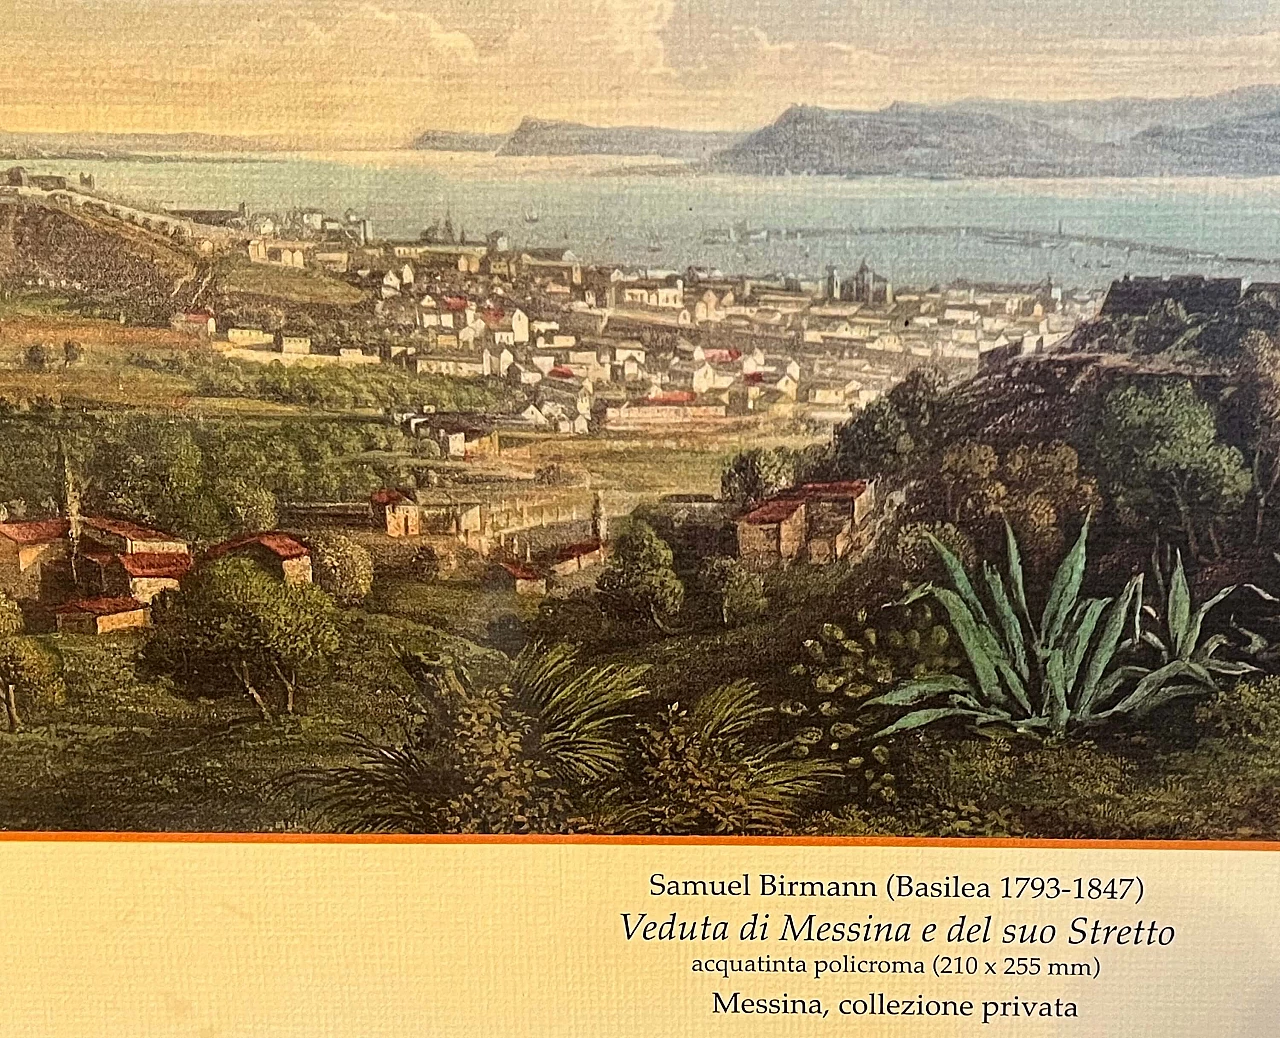 Veduta di Messina, riproduzione da Samuel Birmann, stampa a colori, anni '50 5